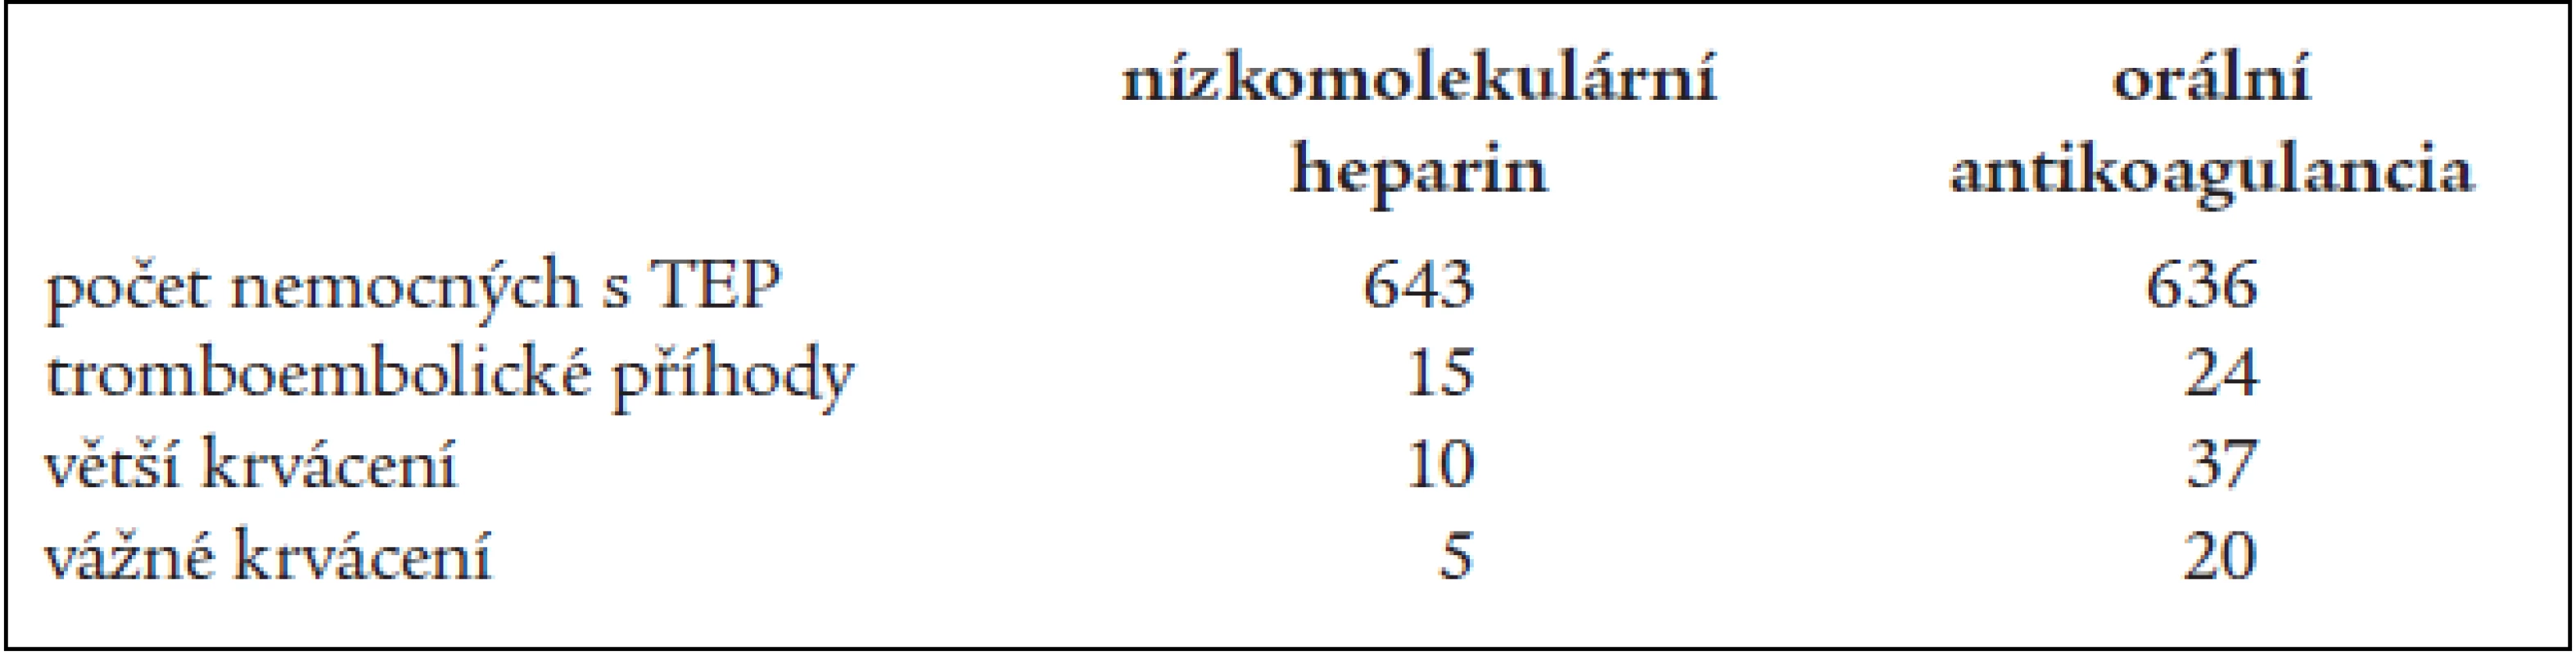 Výsledky pokračující antitrombotické profylaxe nízkomolekulárním heparinem a orální antikoagulační léčbou (Samama et al, 2002).